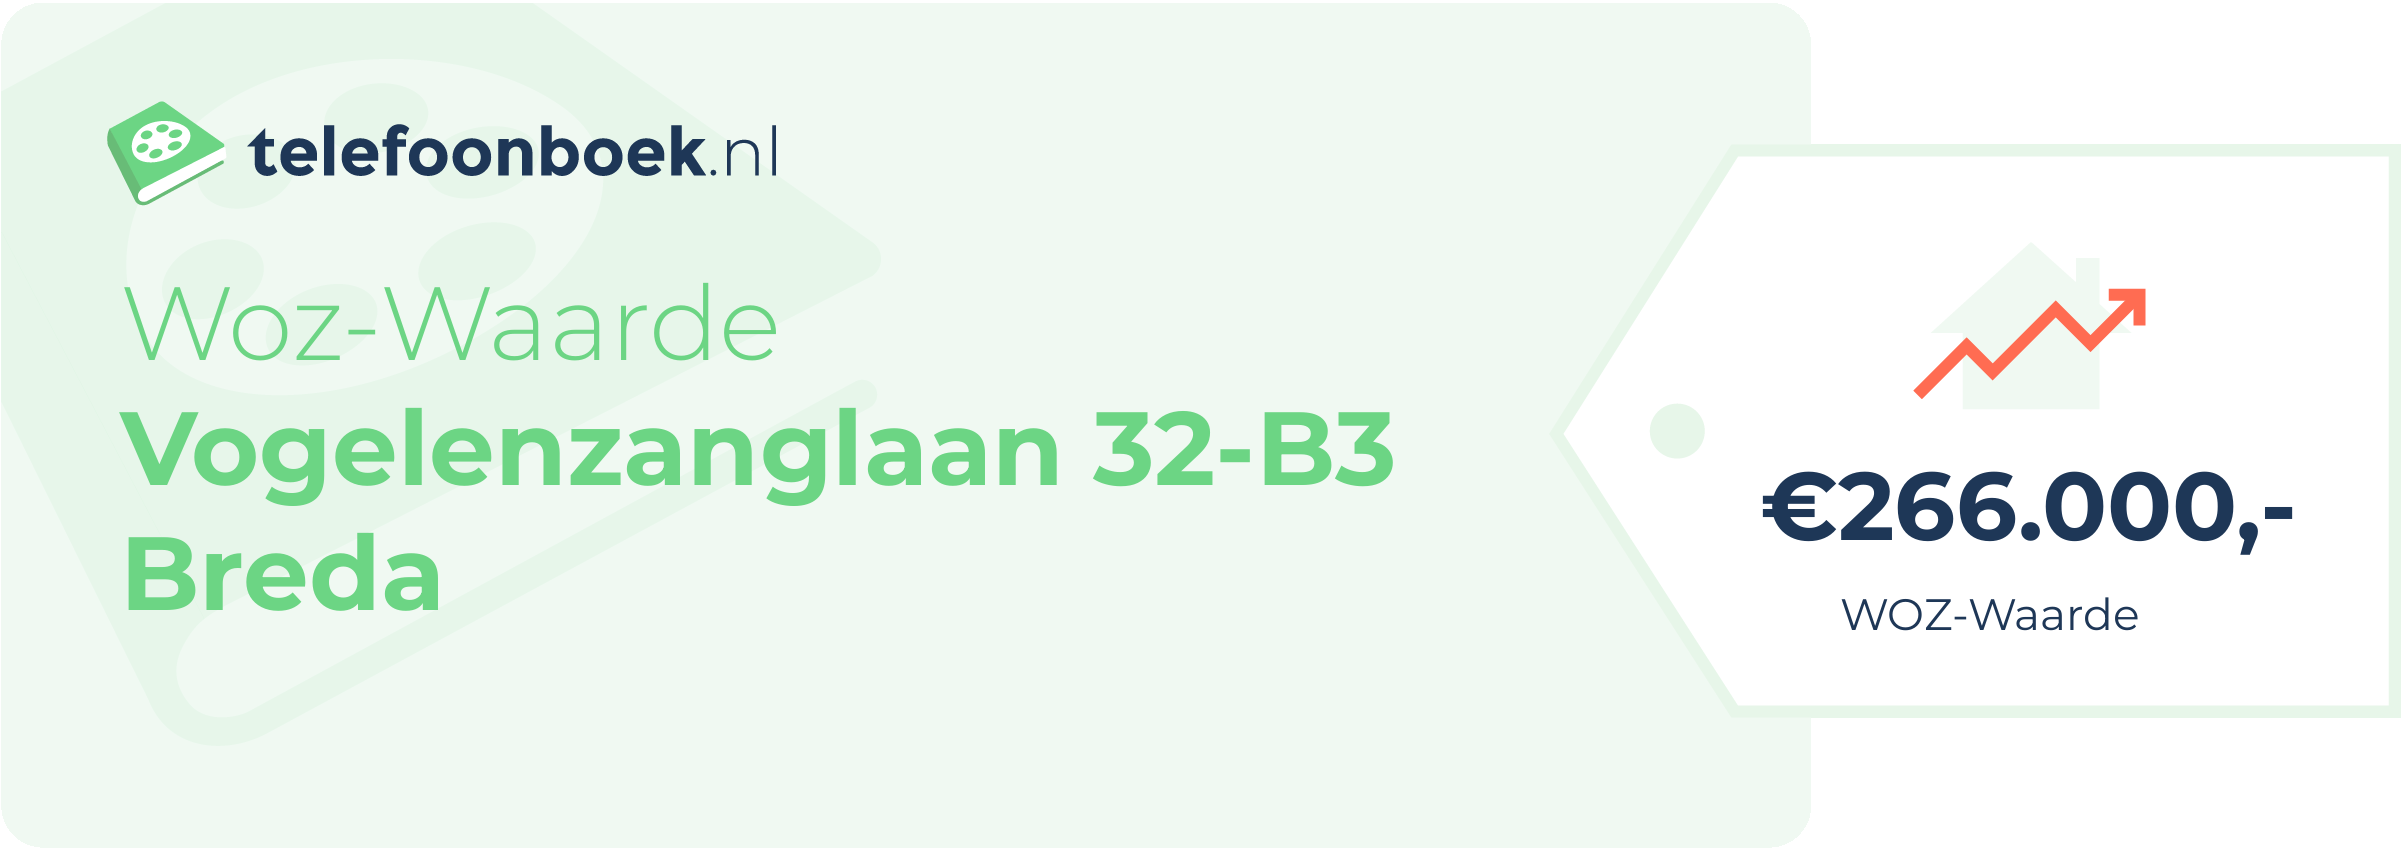 WOZ-waarde Vogelenzanglaan 32-B3 Breda